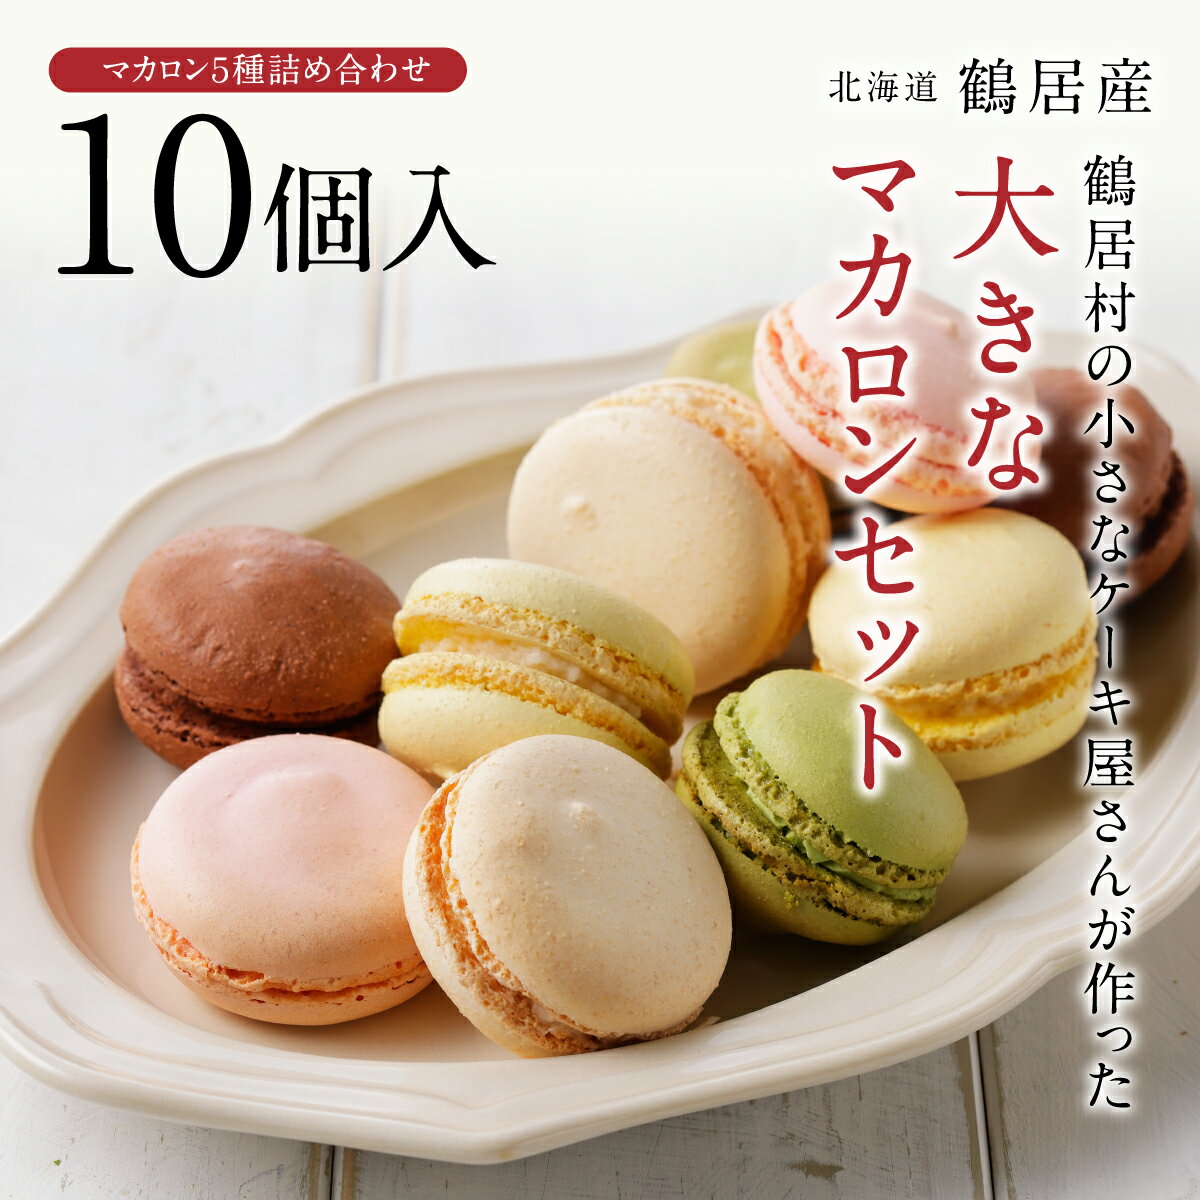 北海道 鶴居村 小さなケーキ屋さん が作った大きな マカロン 5種 詰め合わせ セット 10個入りスィーツ